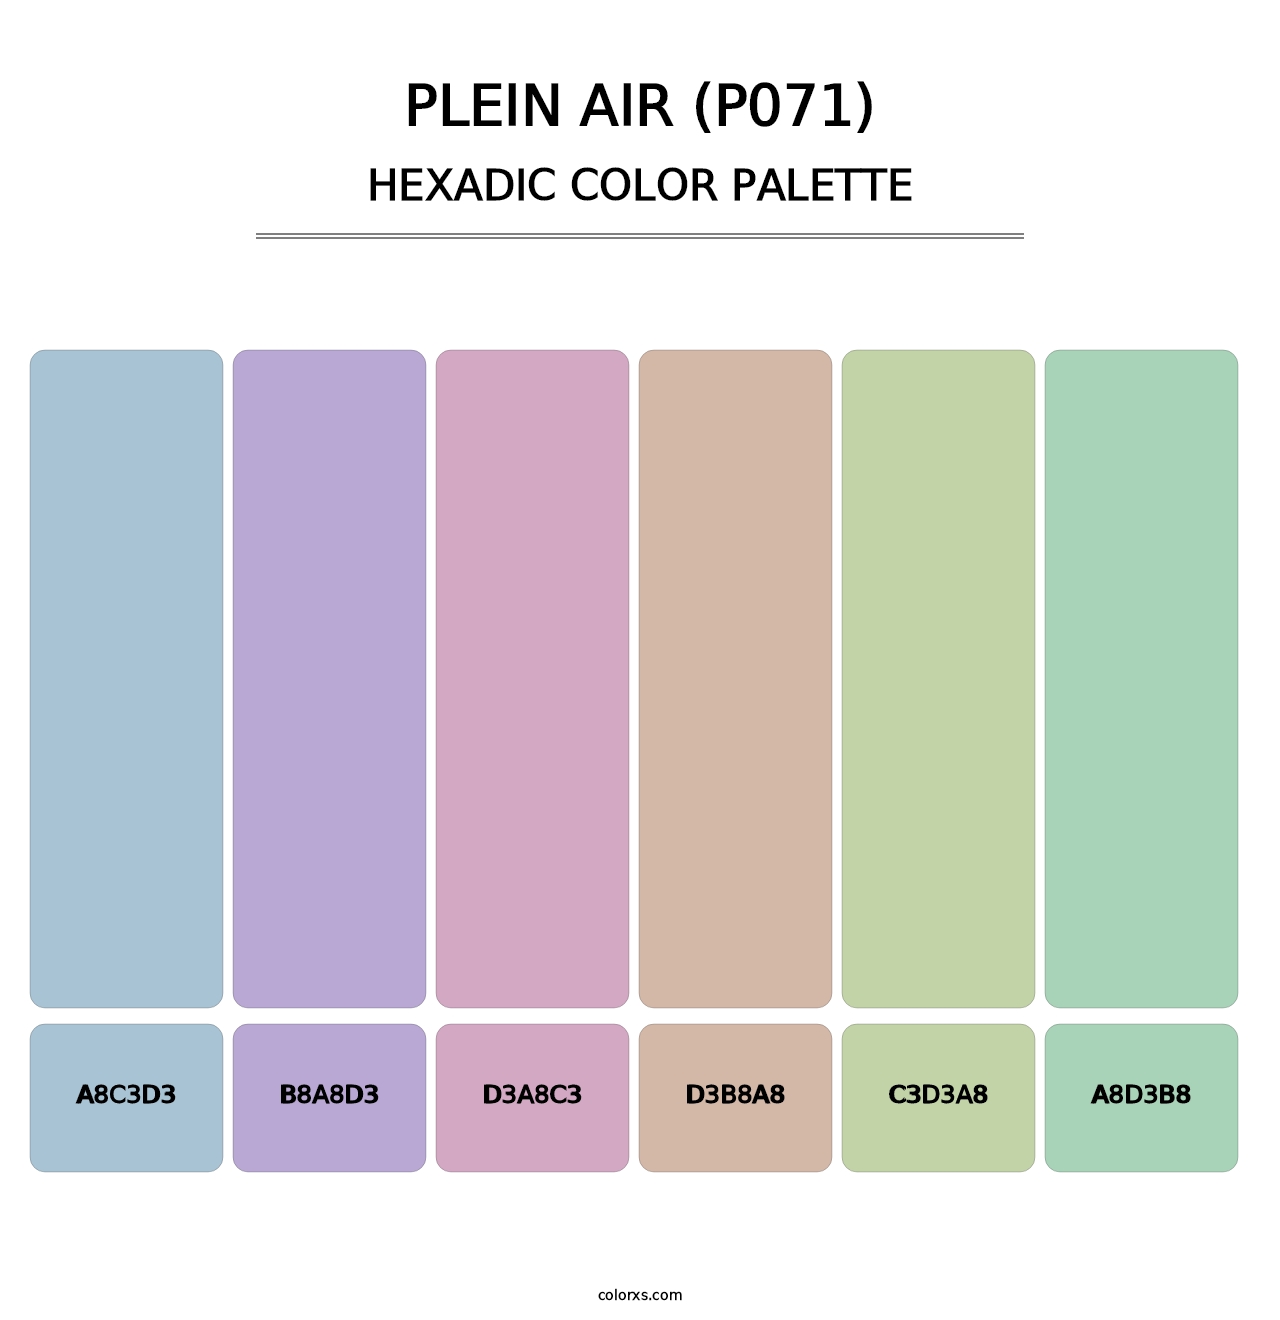 Plein Air (P071) - Hexadic Color Palette